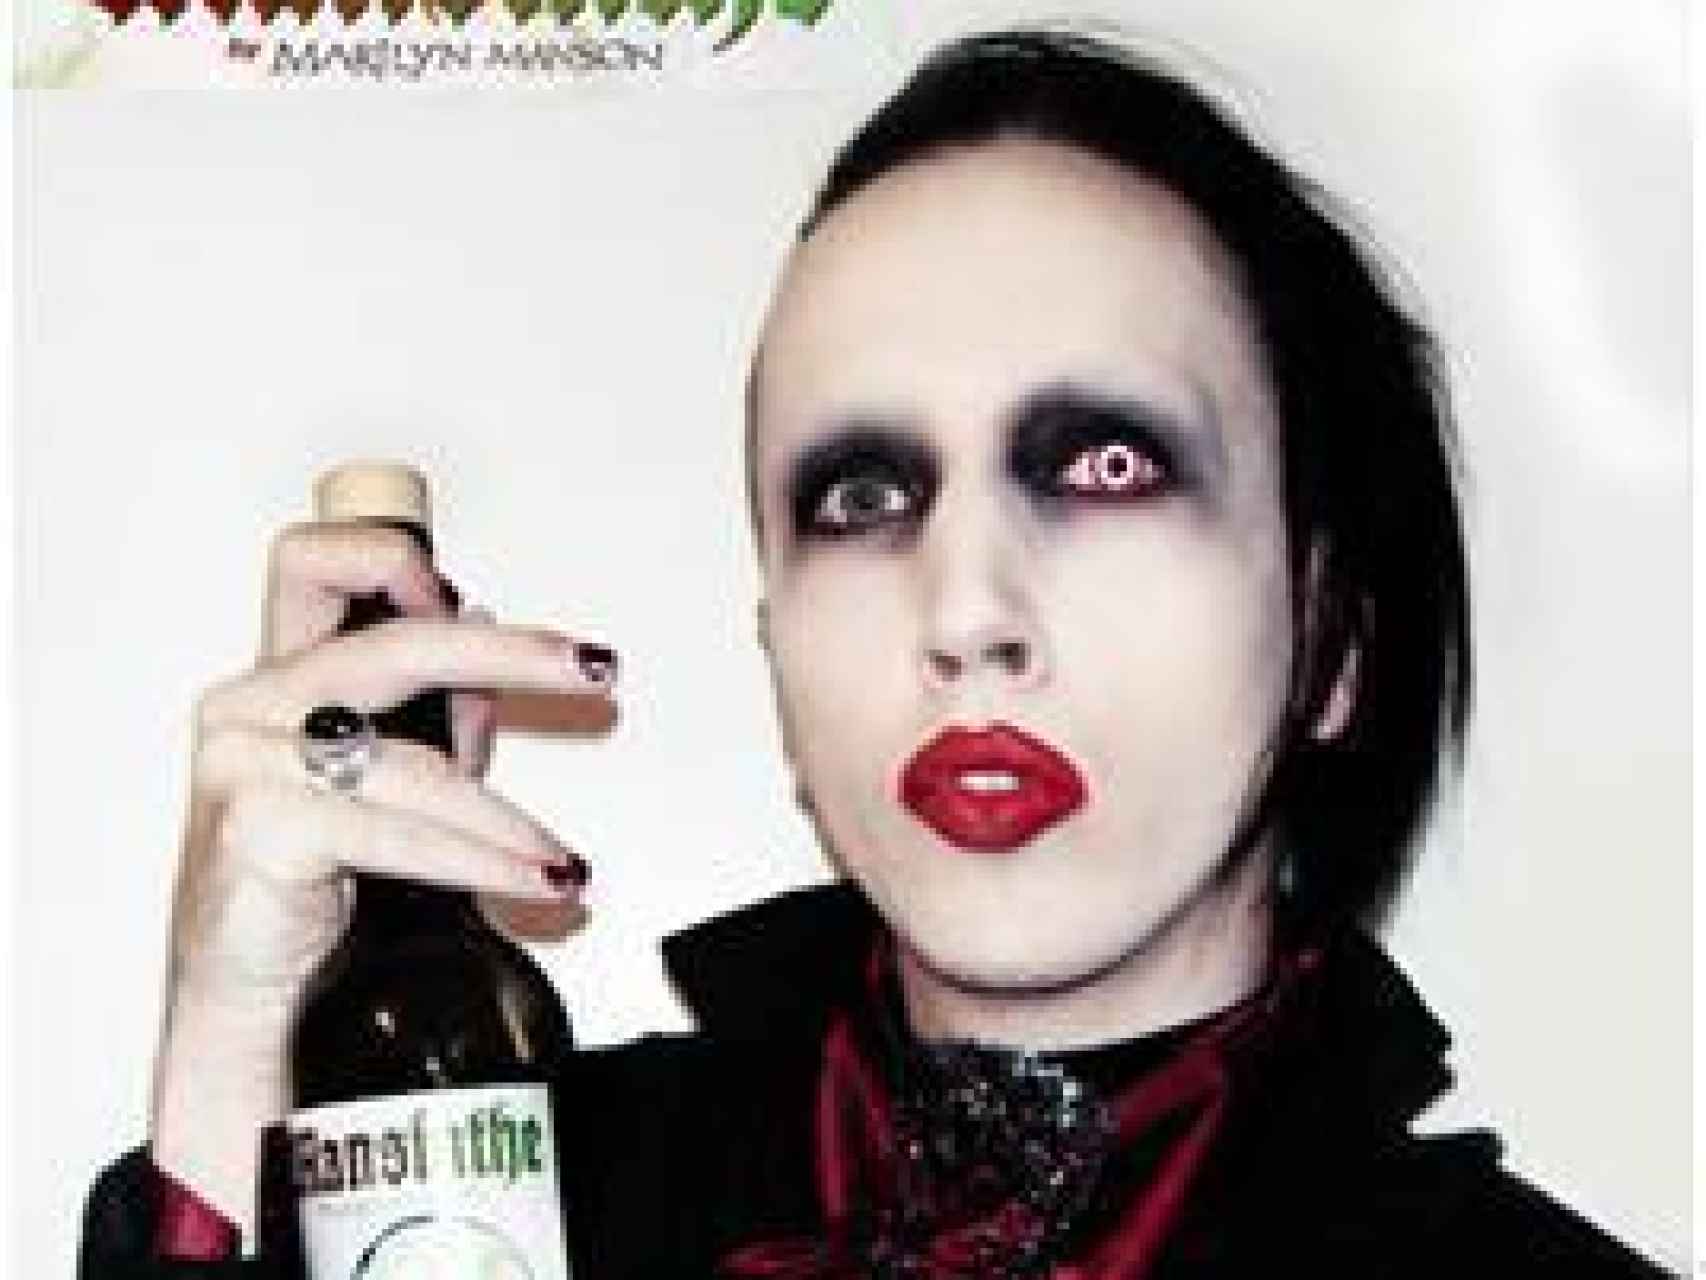 El absenta de Marilyn Manson.